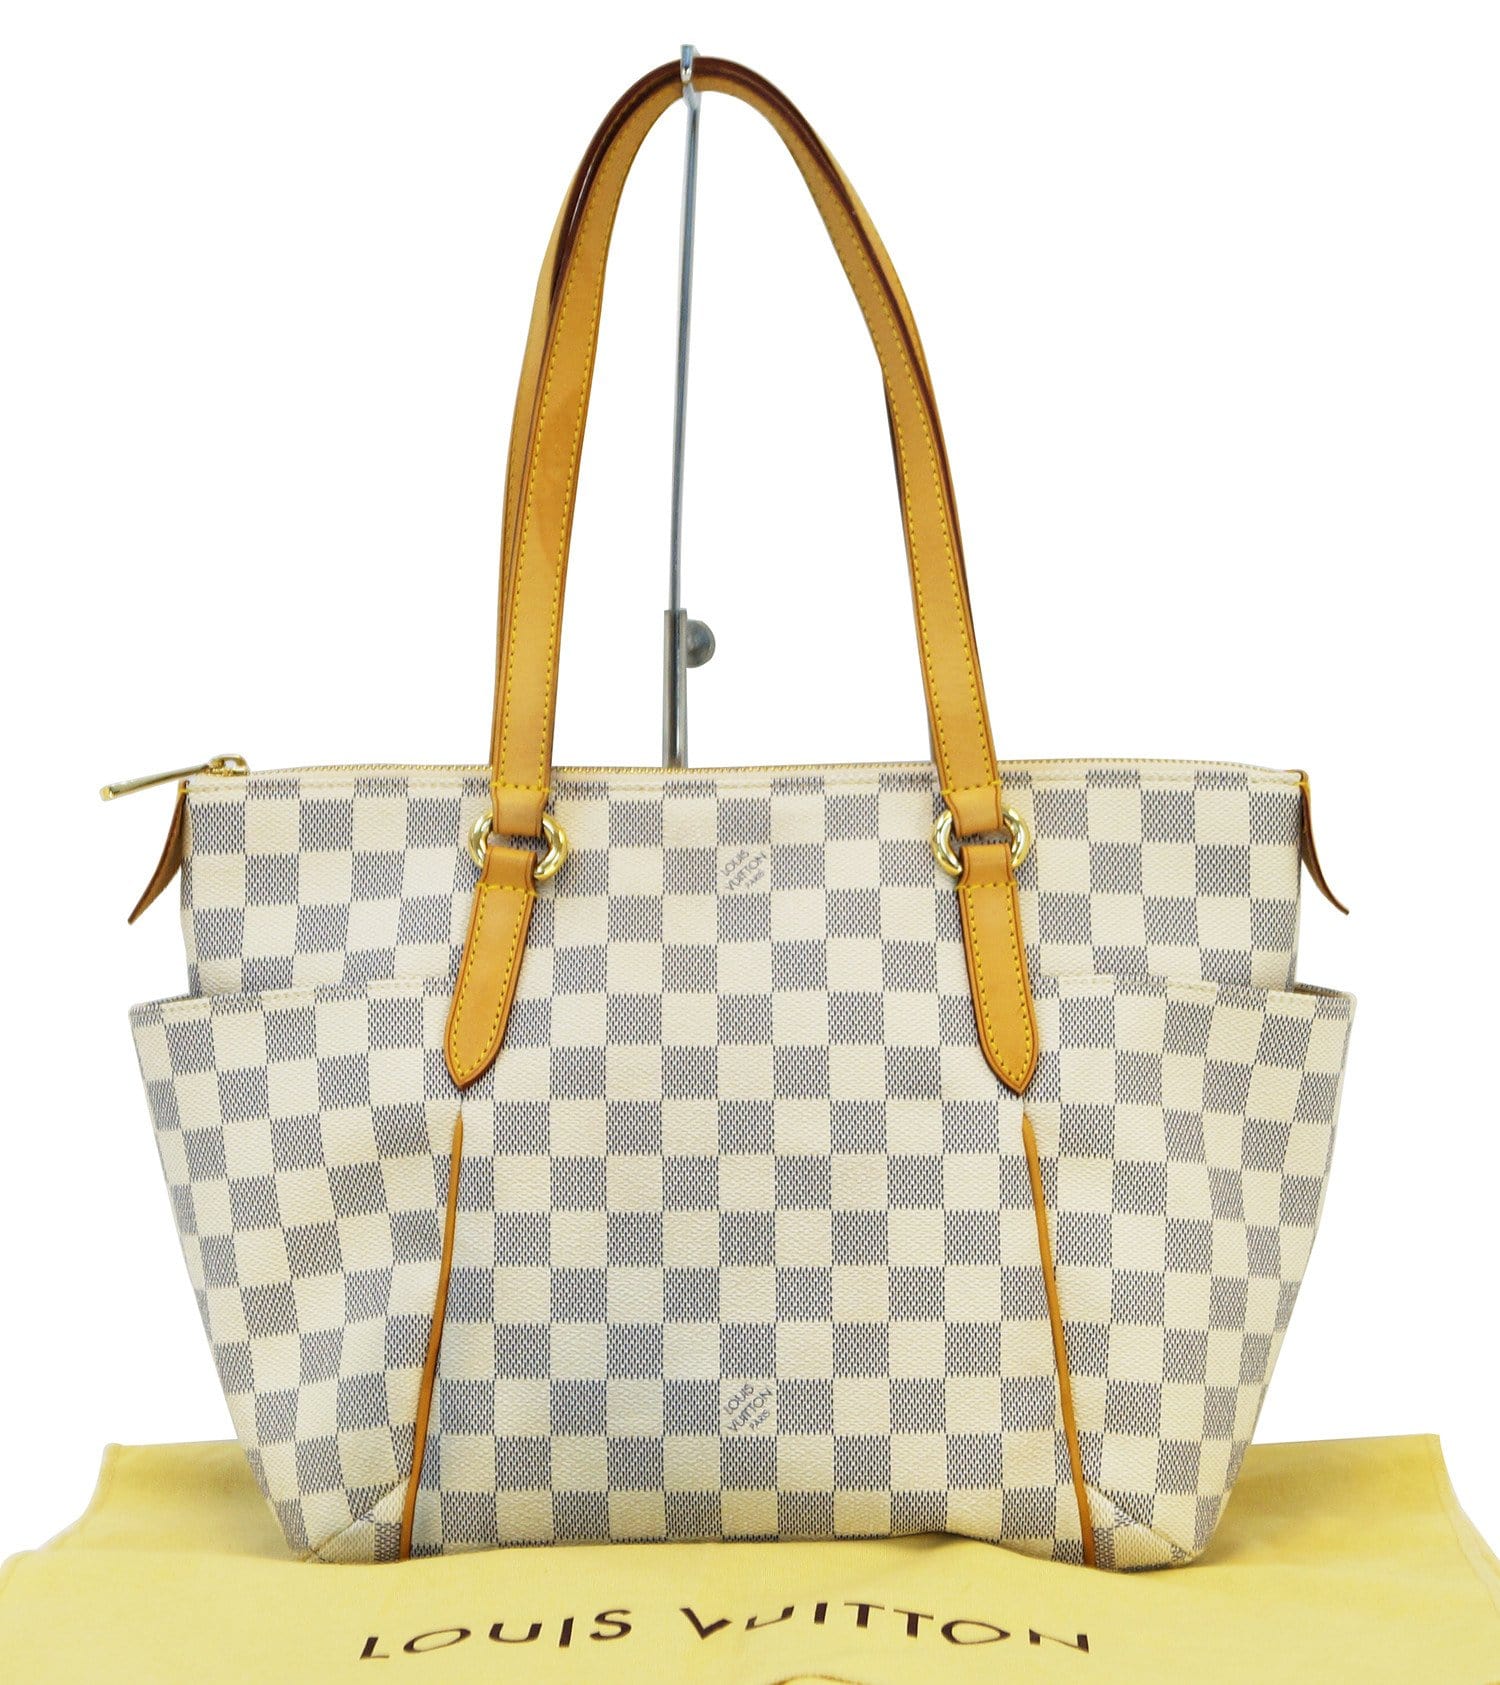 Louis Vuitton Damier Azur Totally Pm Shoulder Bag 50% off retail